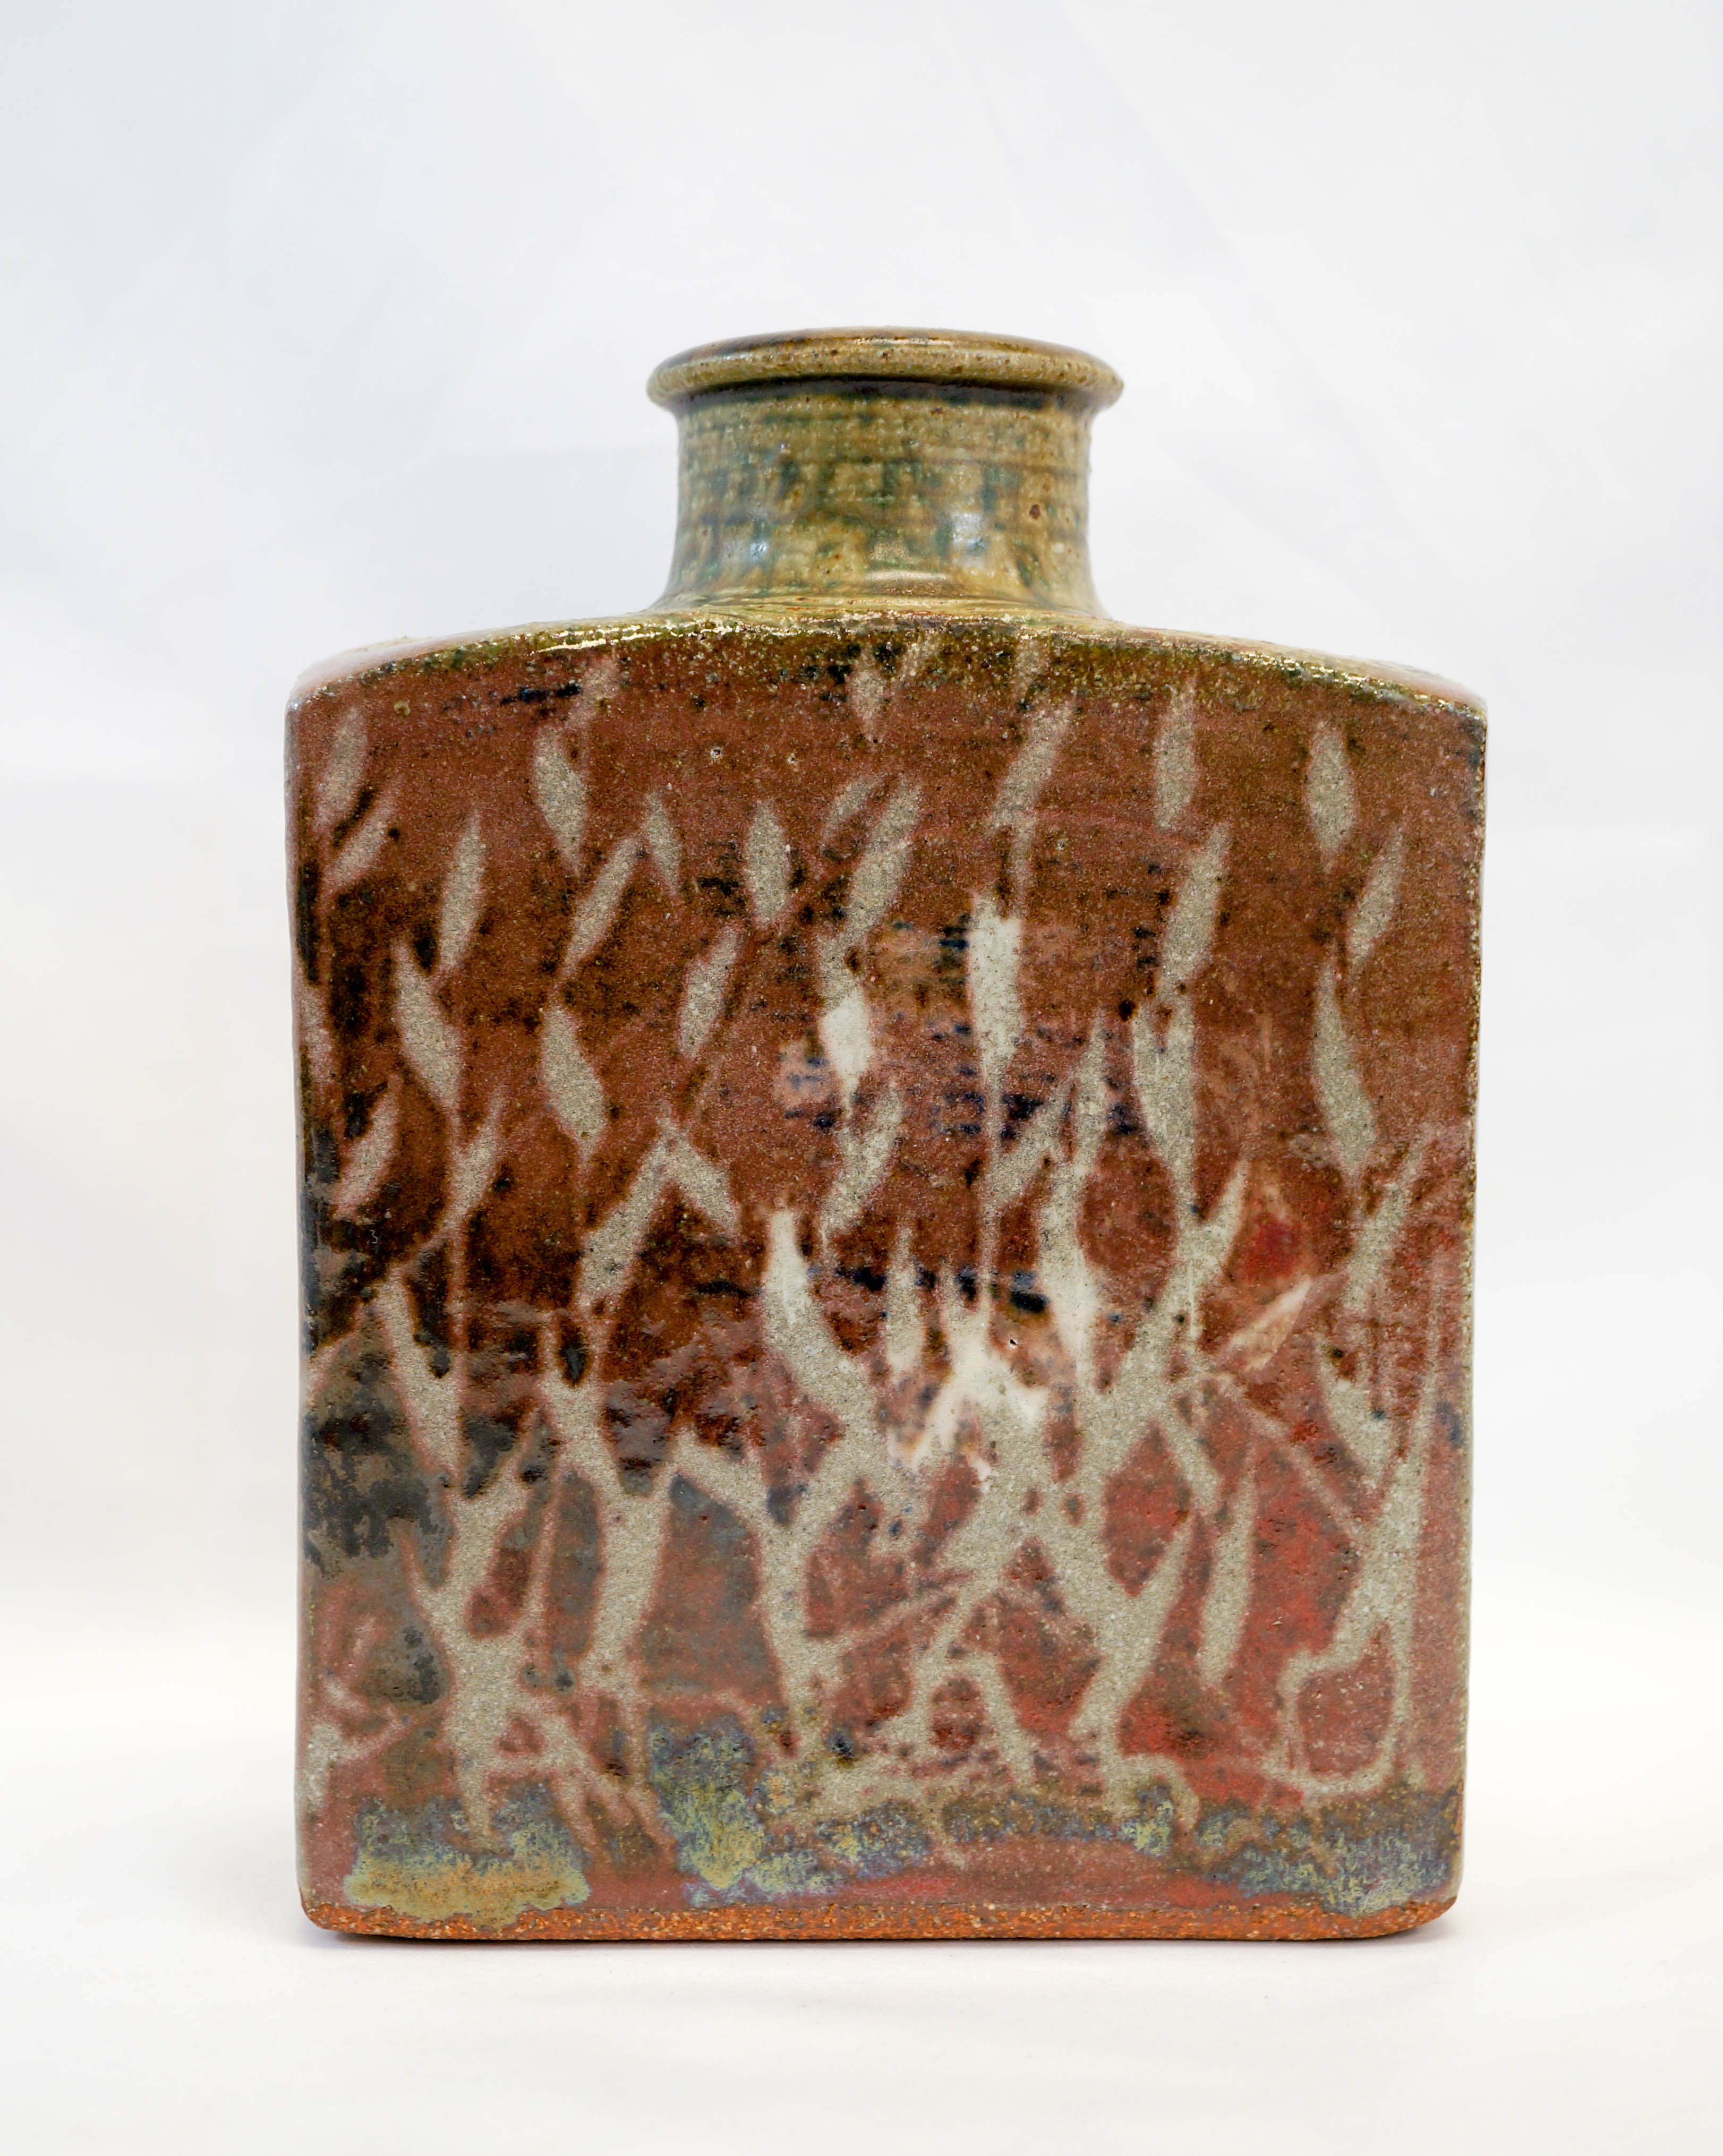 Mashiko Stoneware Pottery Bottle Vase